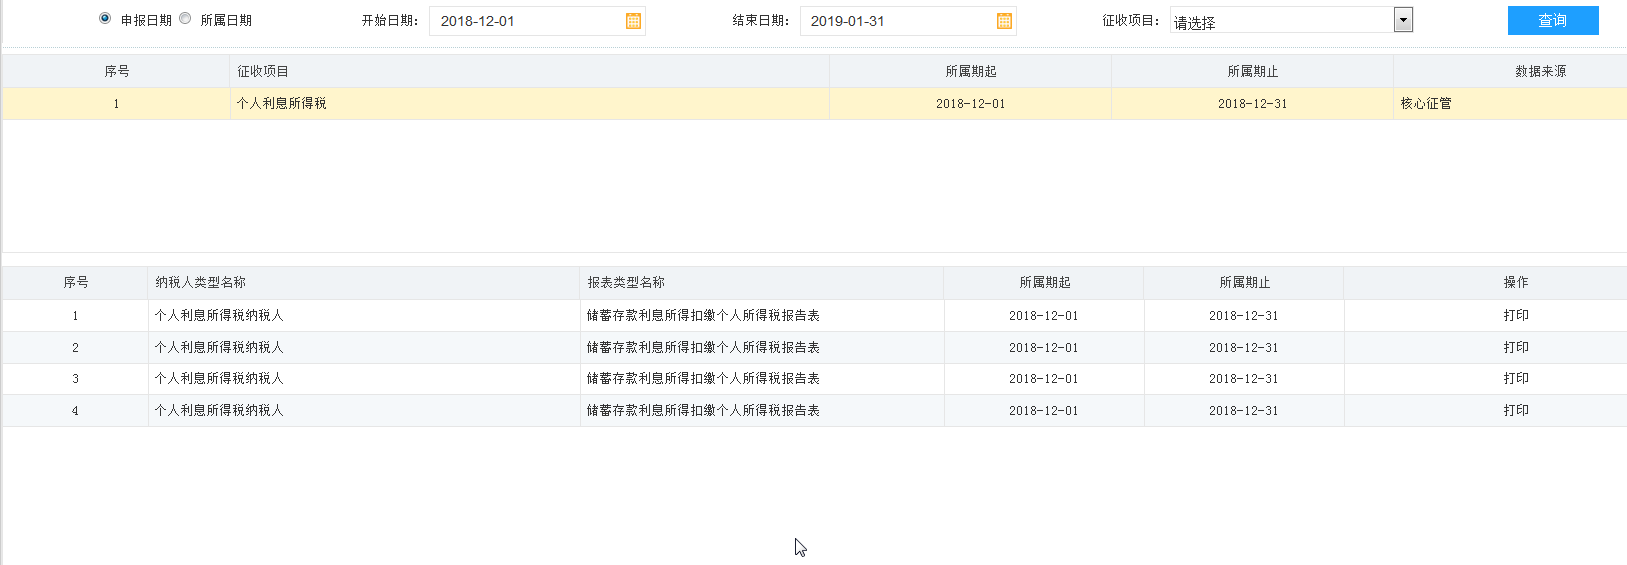 河南省电子税务局废弃电器电子产品处理基金申报表内容删除